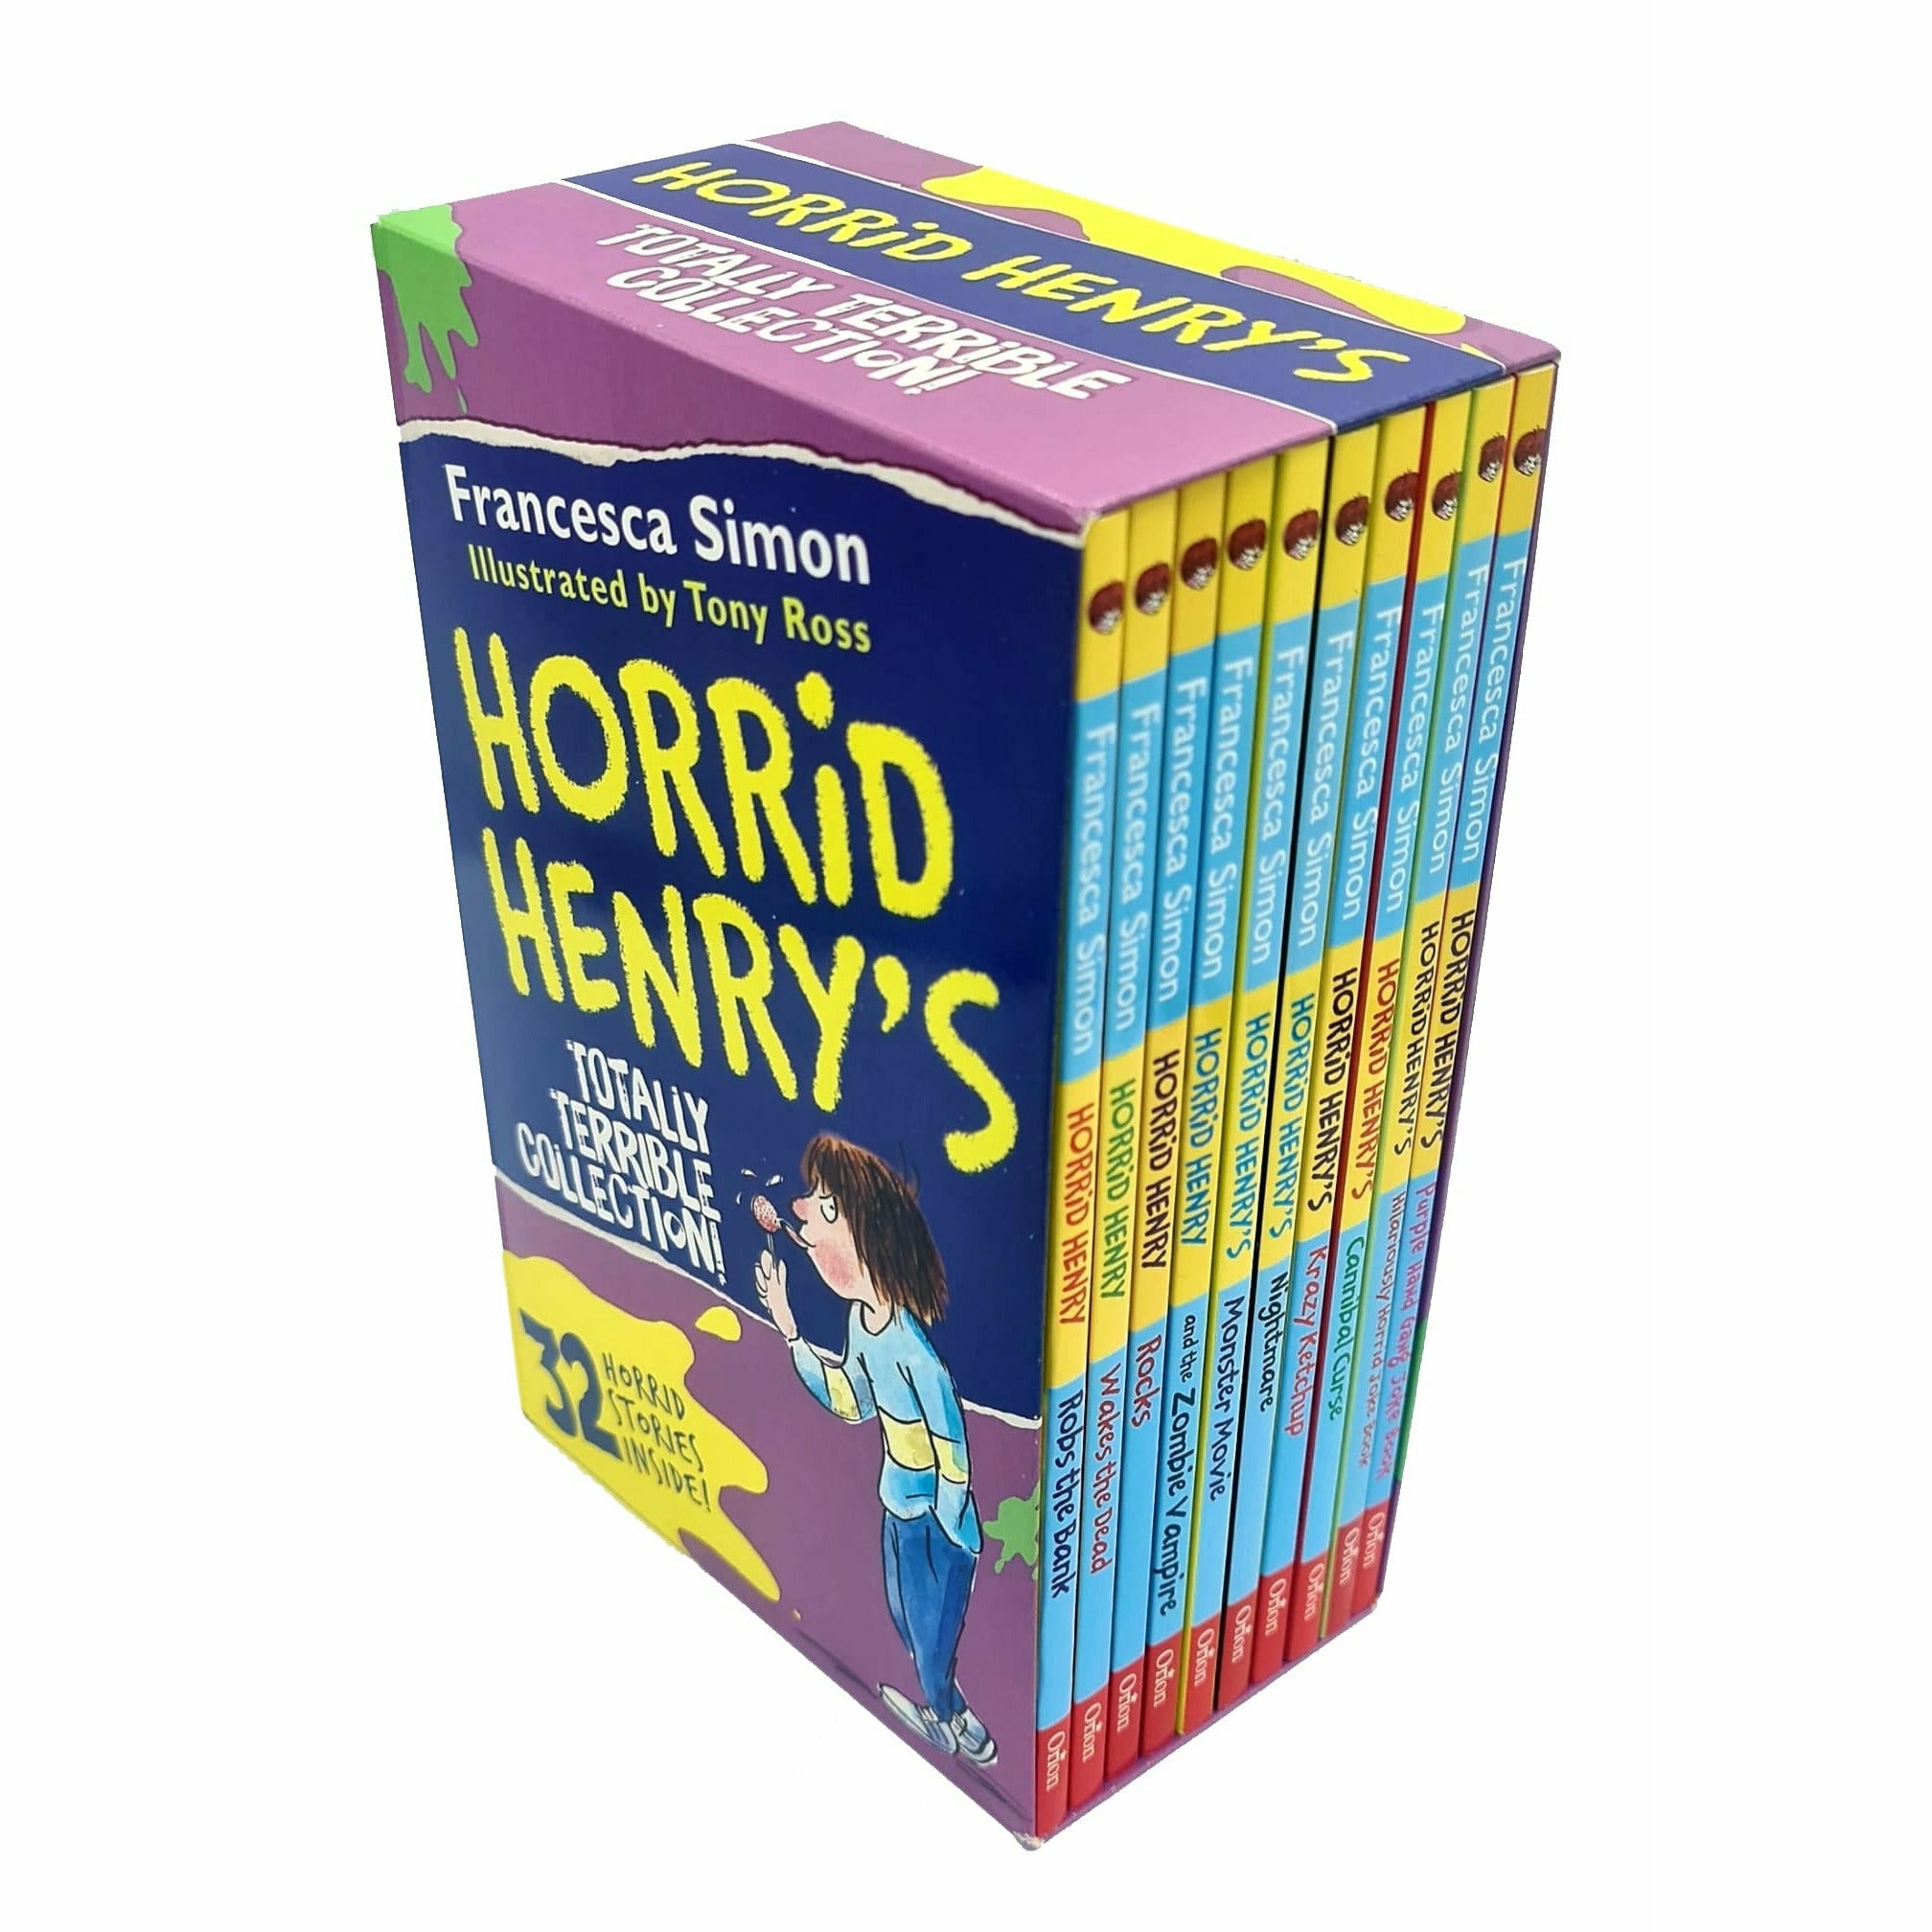 Horrid Henry book